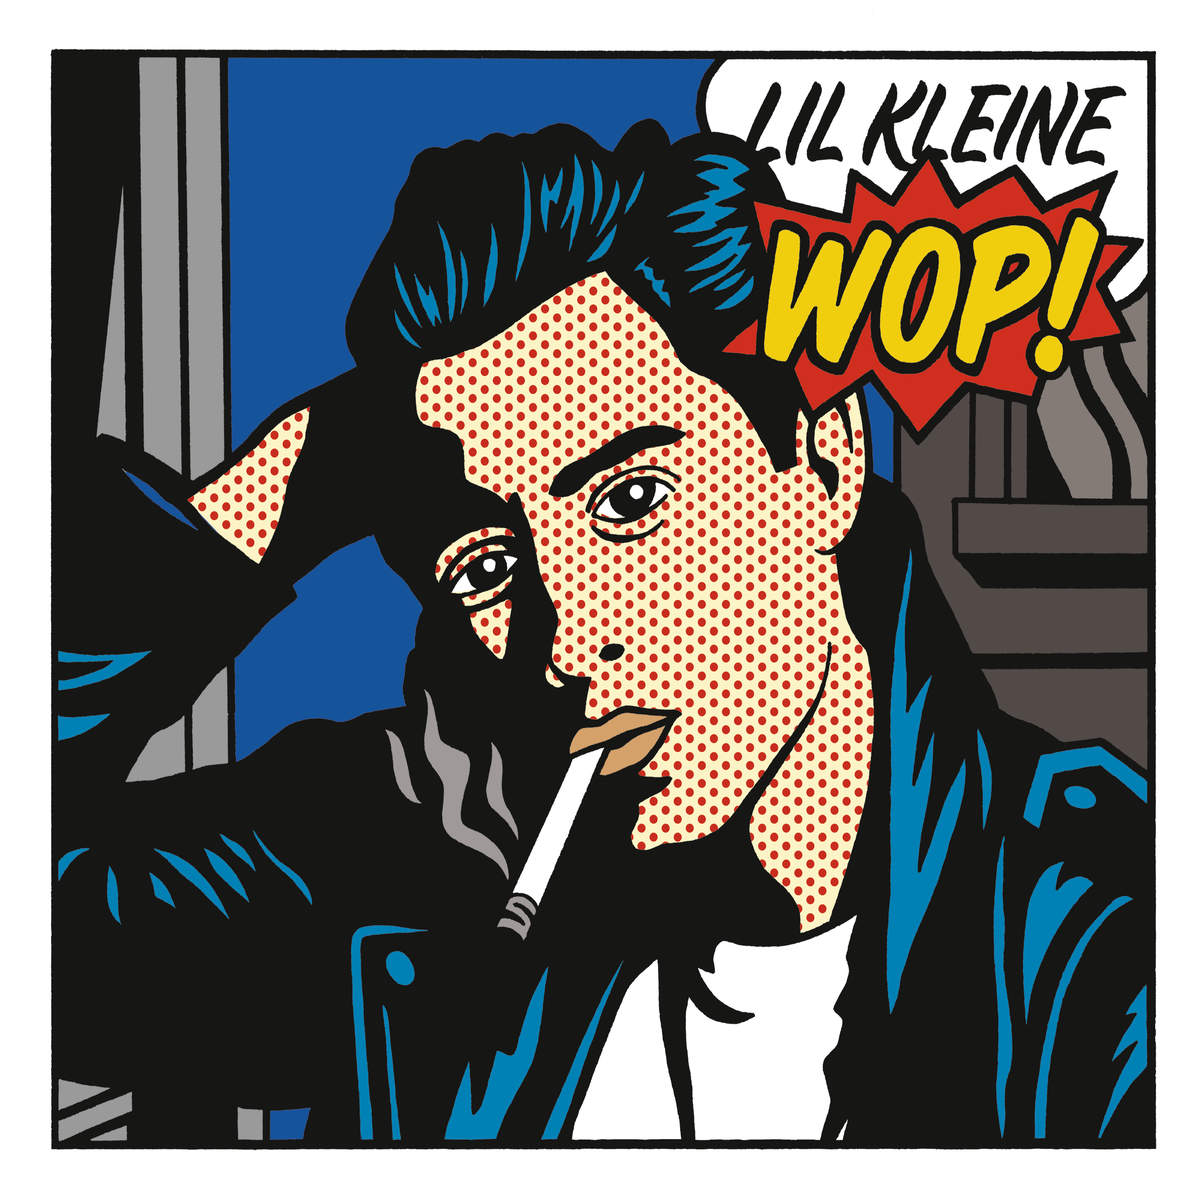 Lil Kleine - WOP (album artwork cover)